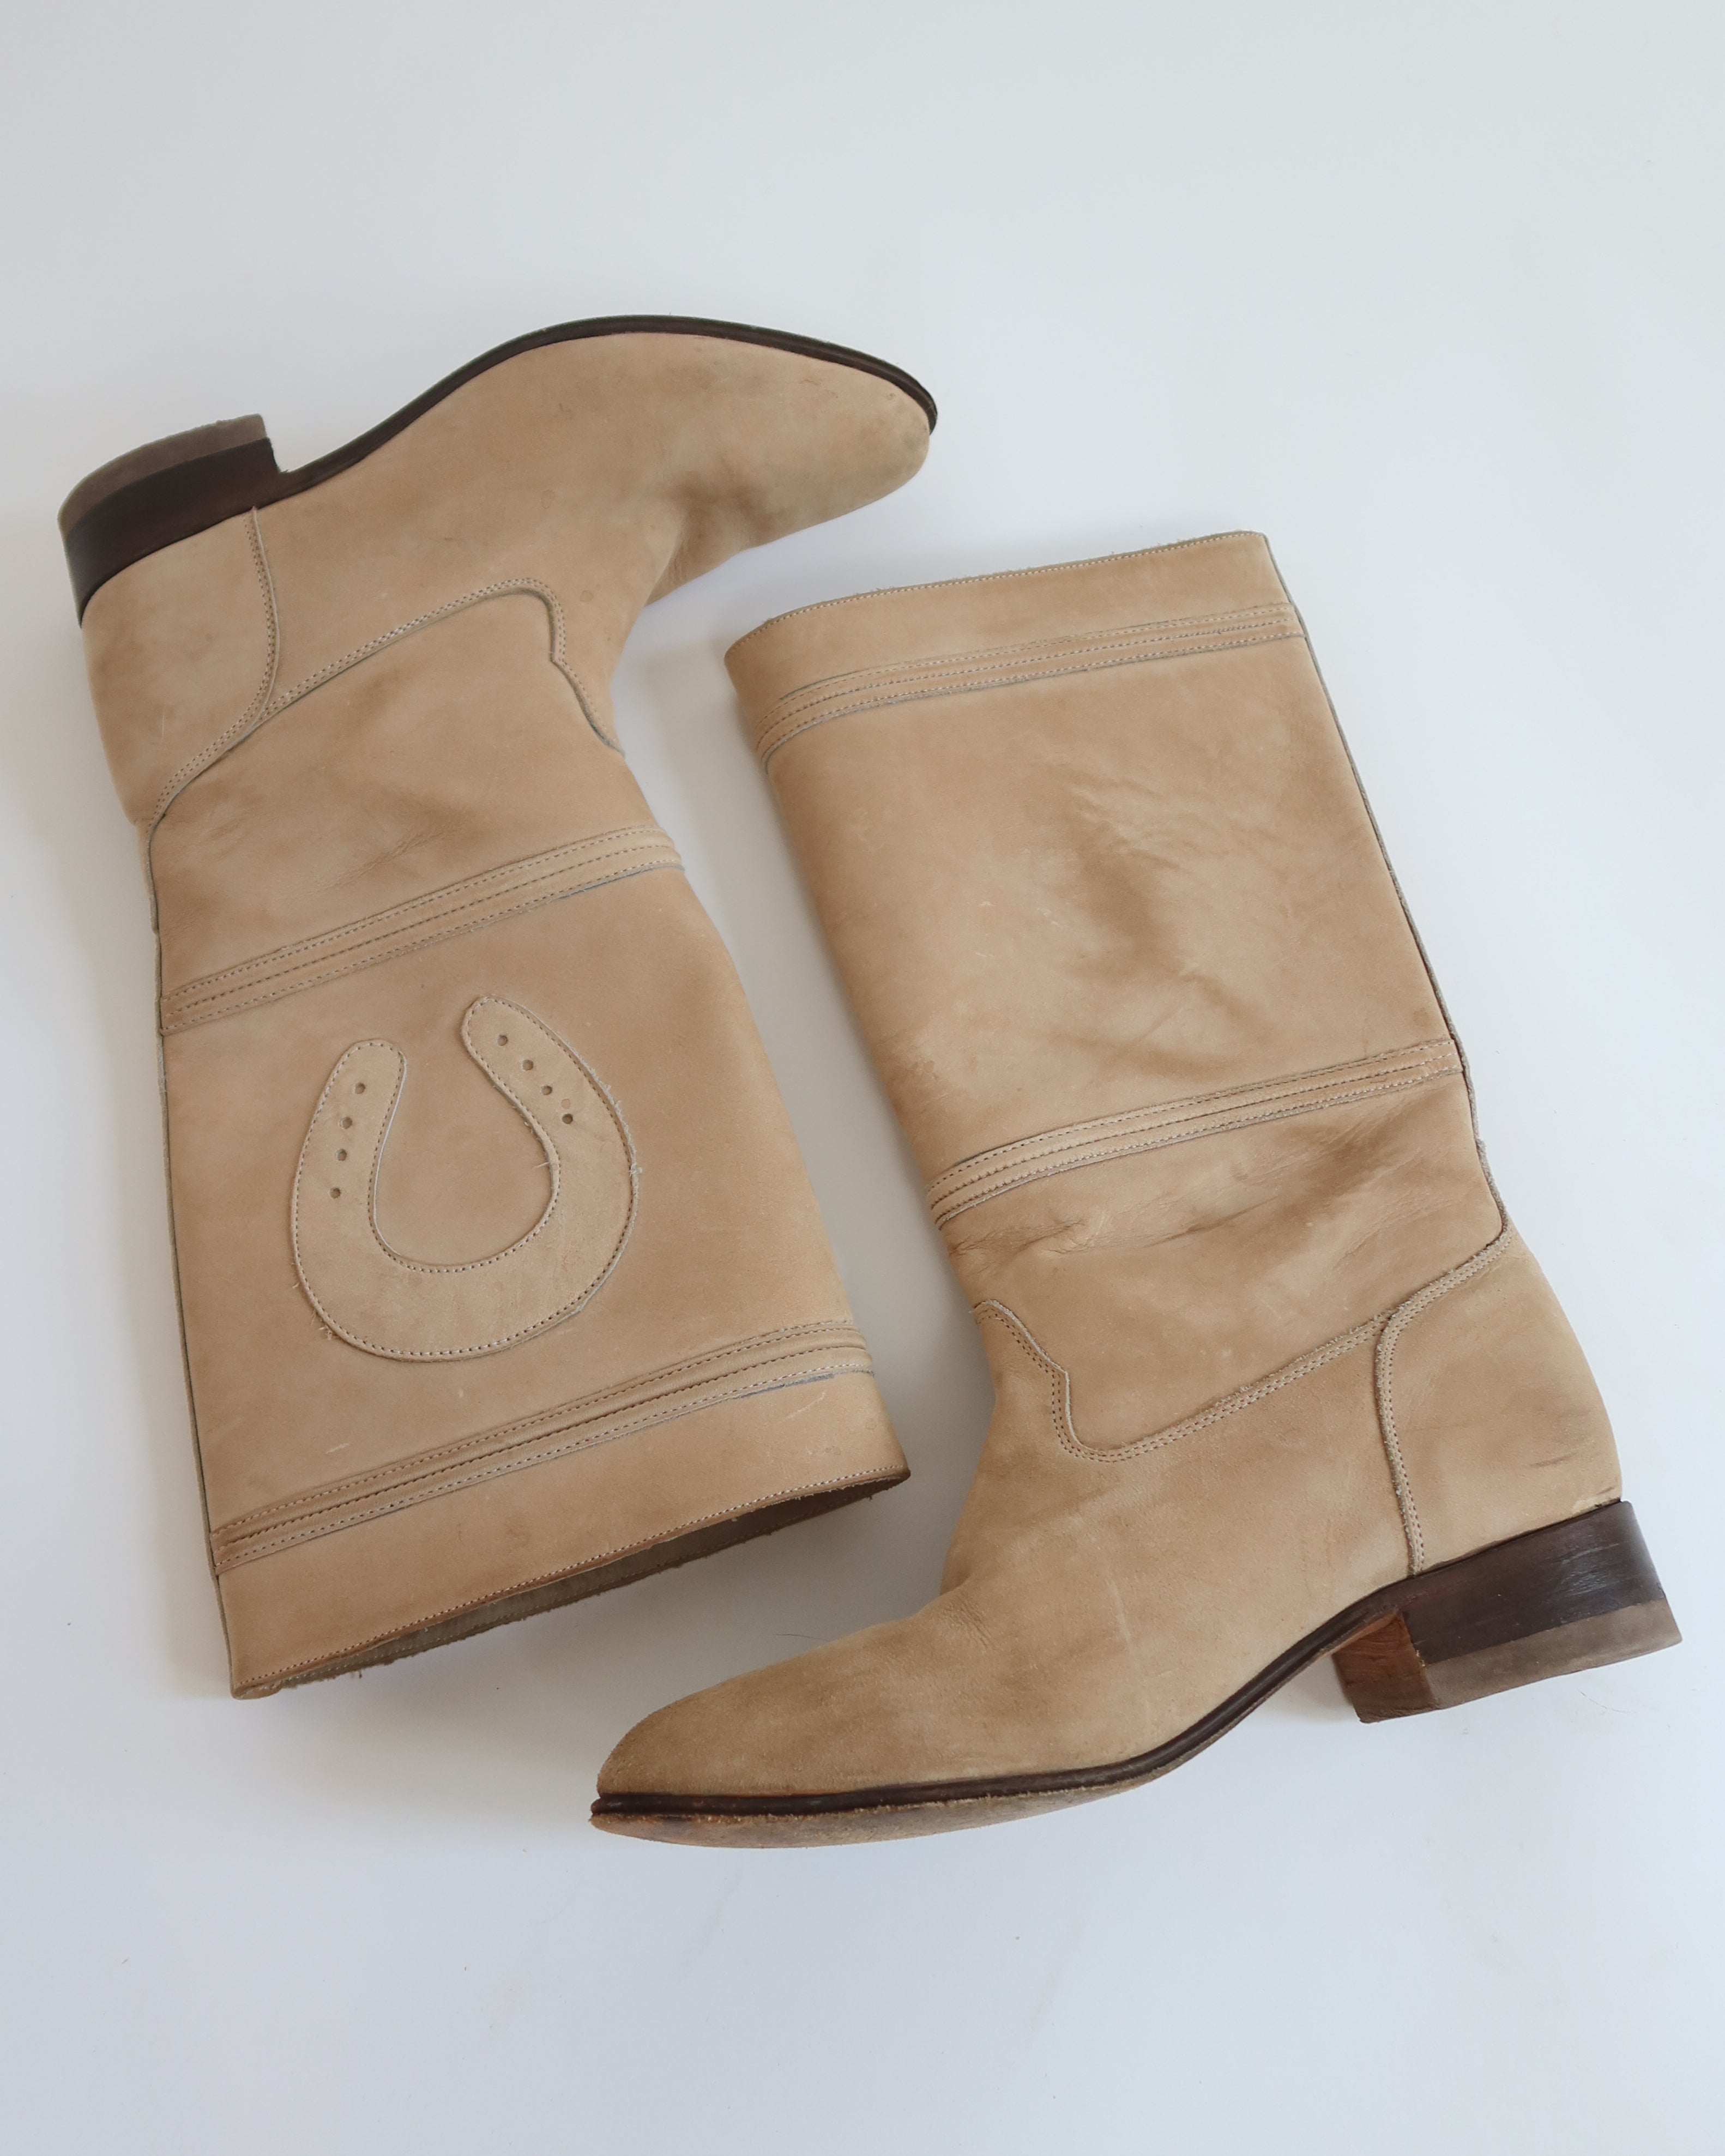 Vintage Leather Horseshoe Boots